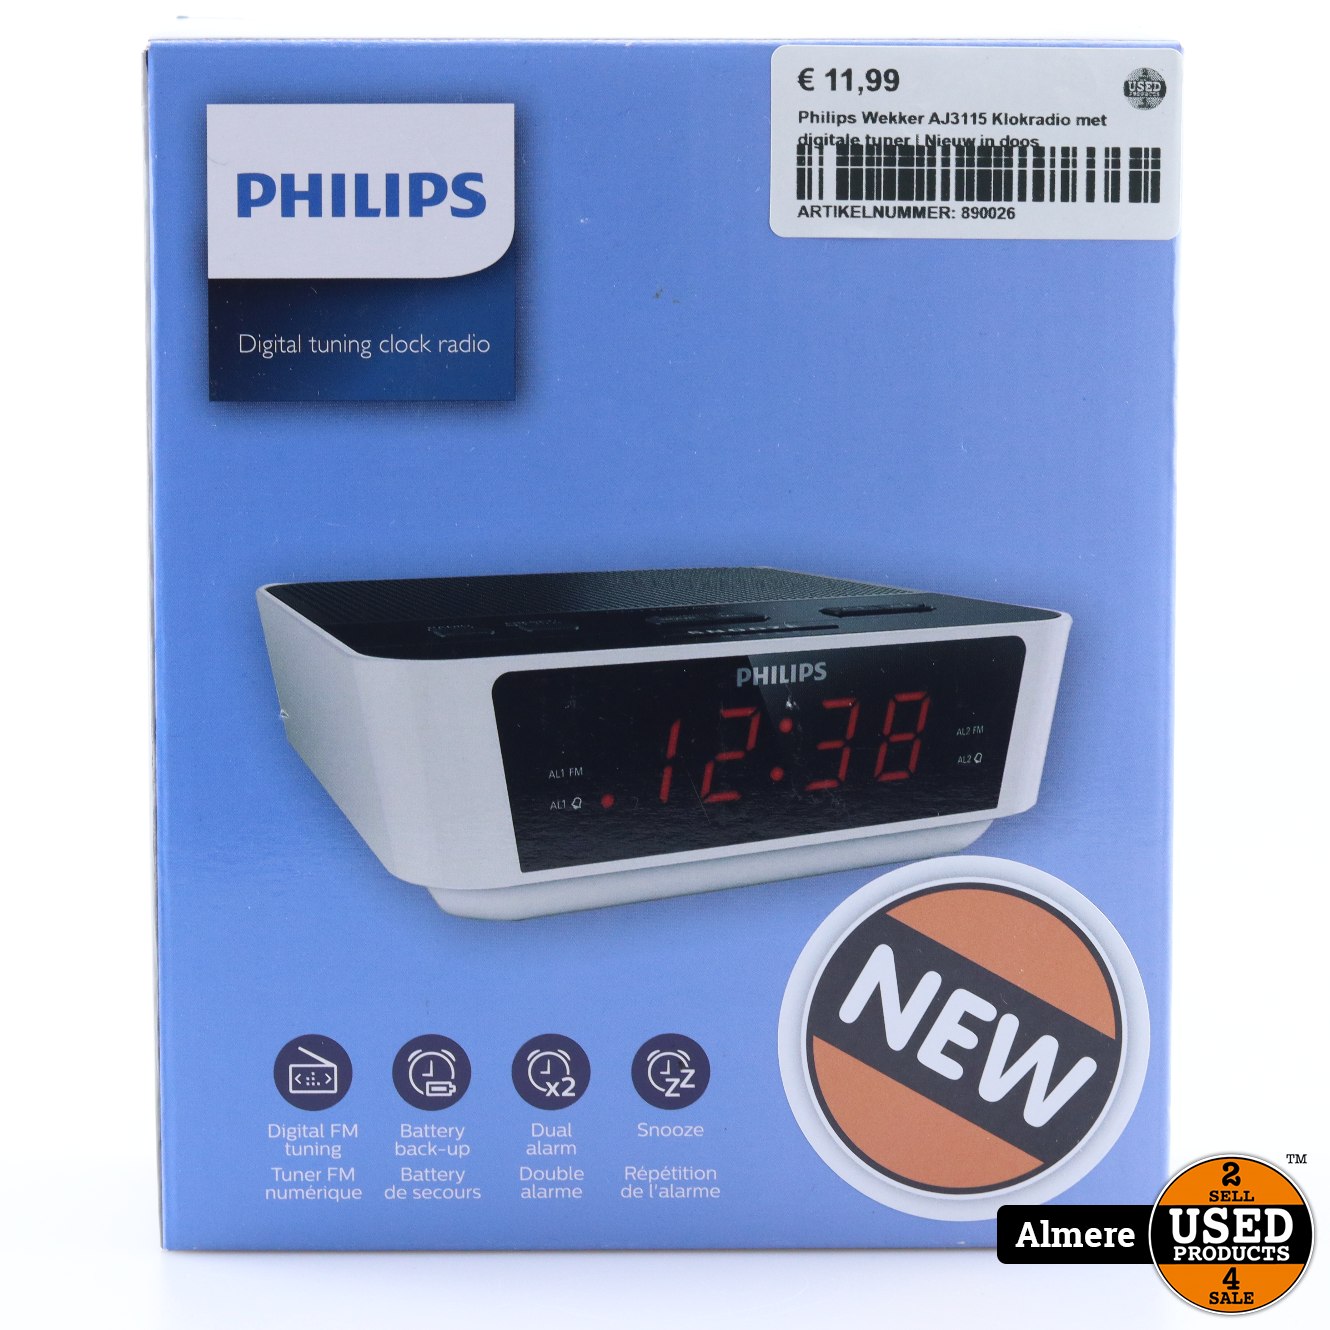 Philips Wekker AJ3115 Klokradio met digitale tuner Nieuw in doos - Used Products Almere